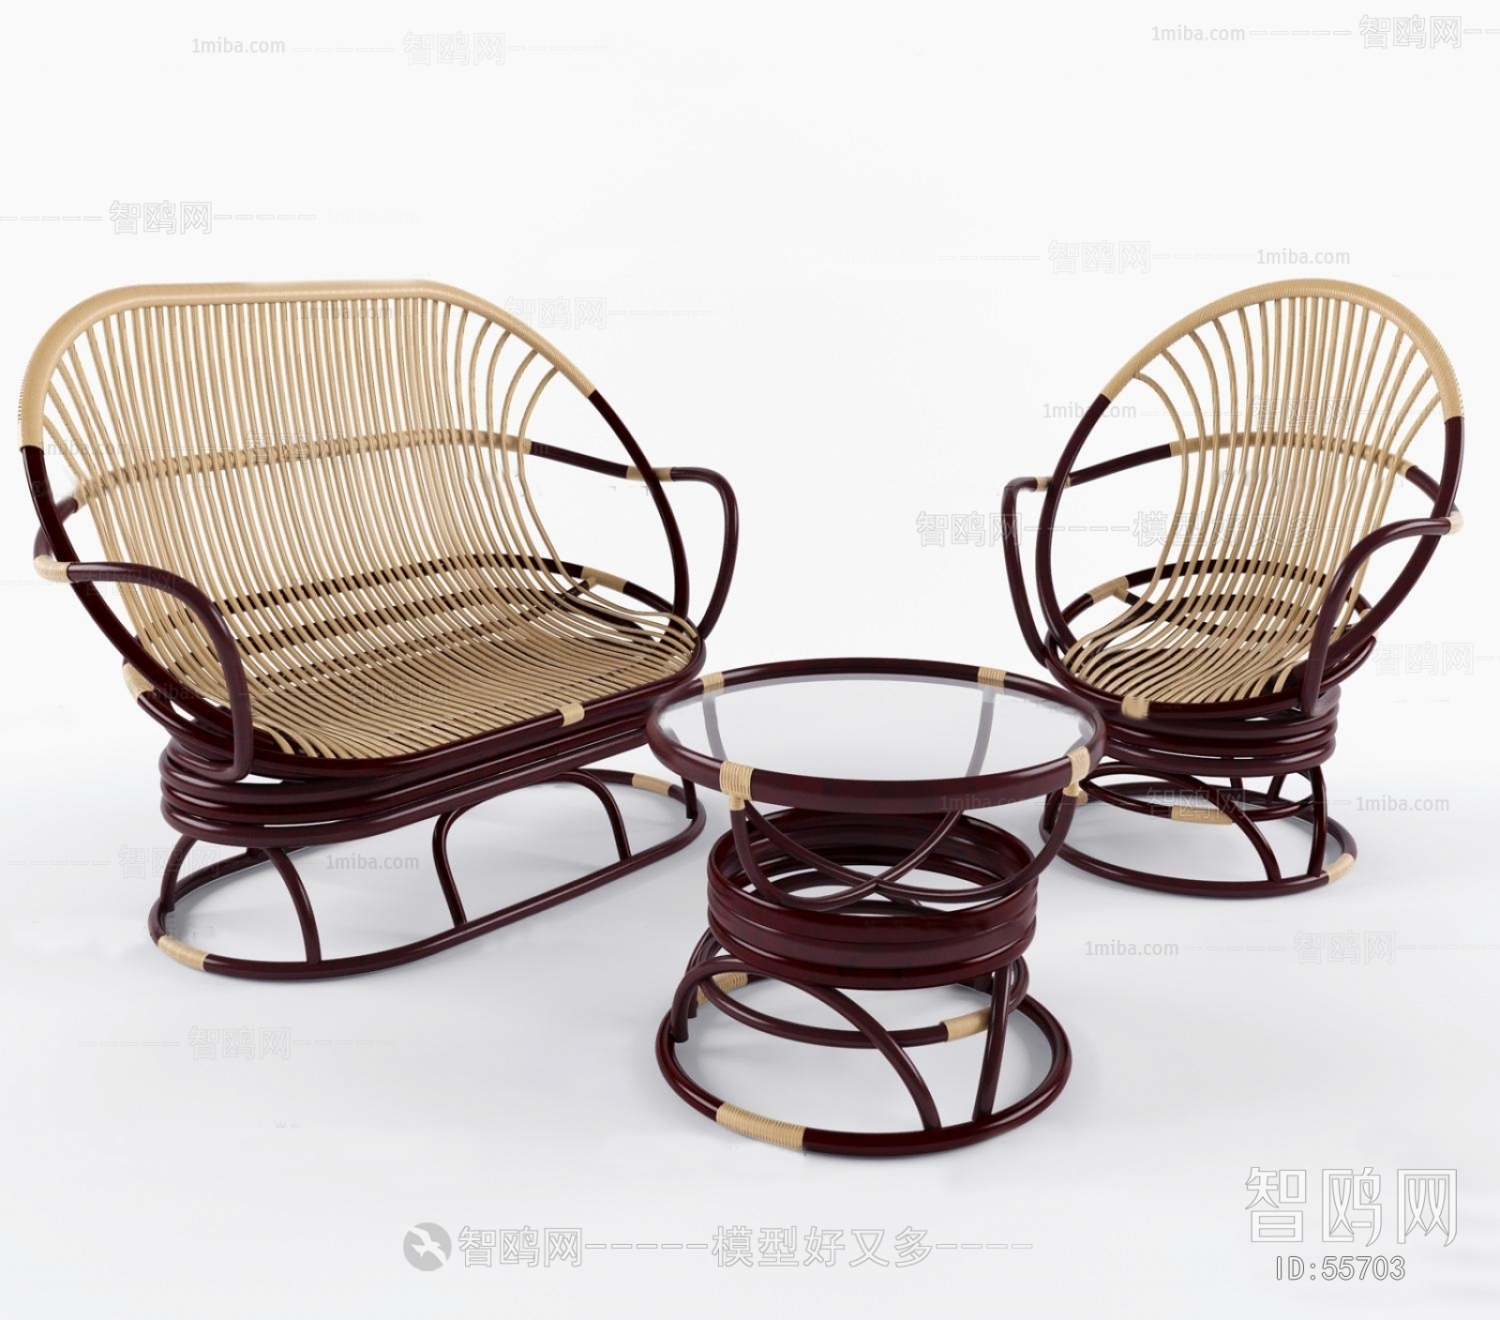 Modern Idyllic Style Lounge Chair